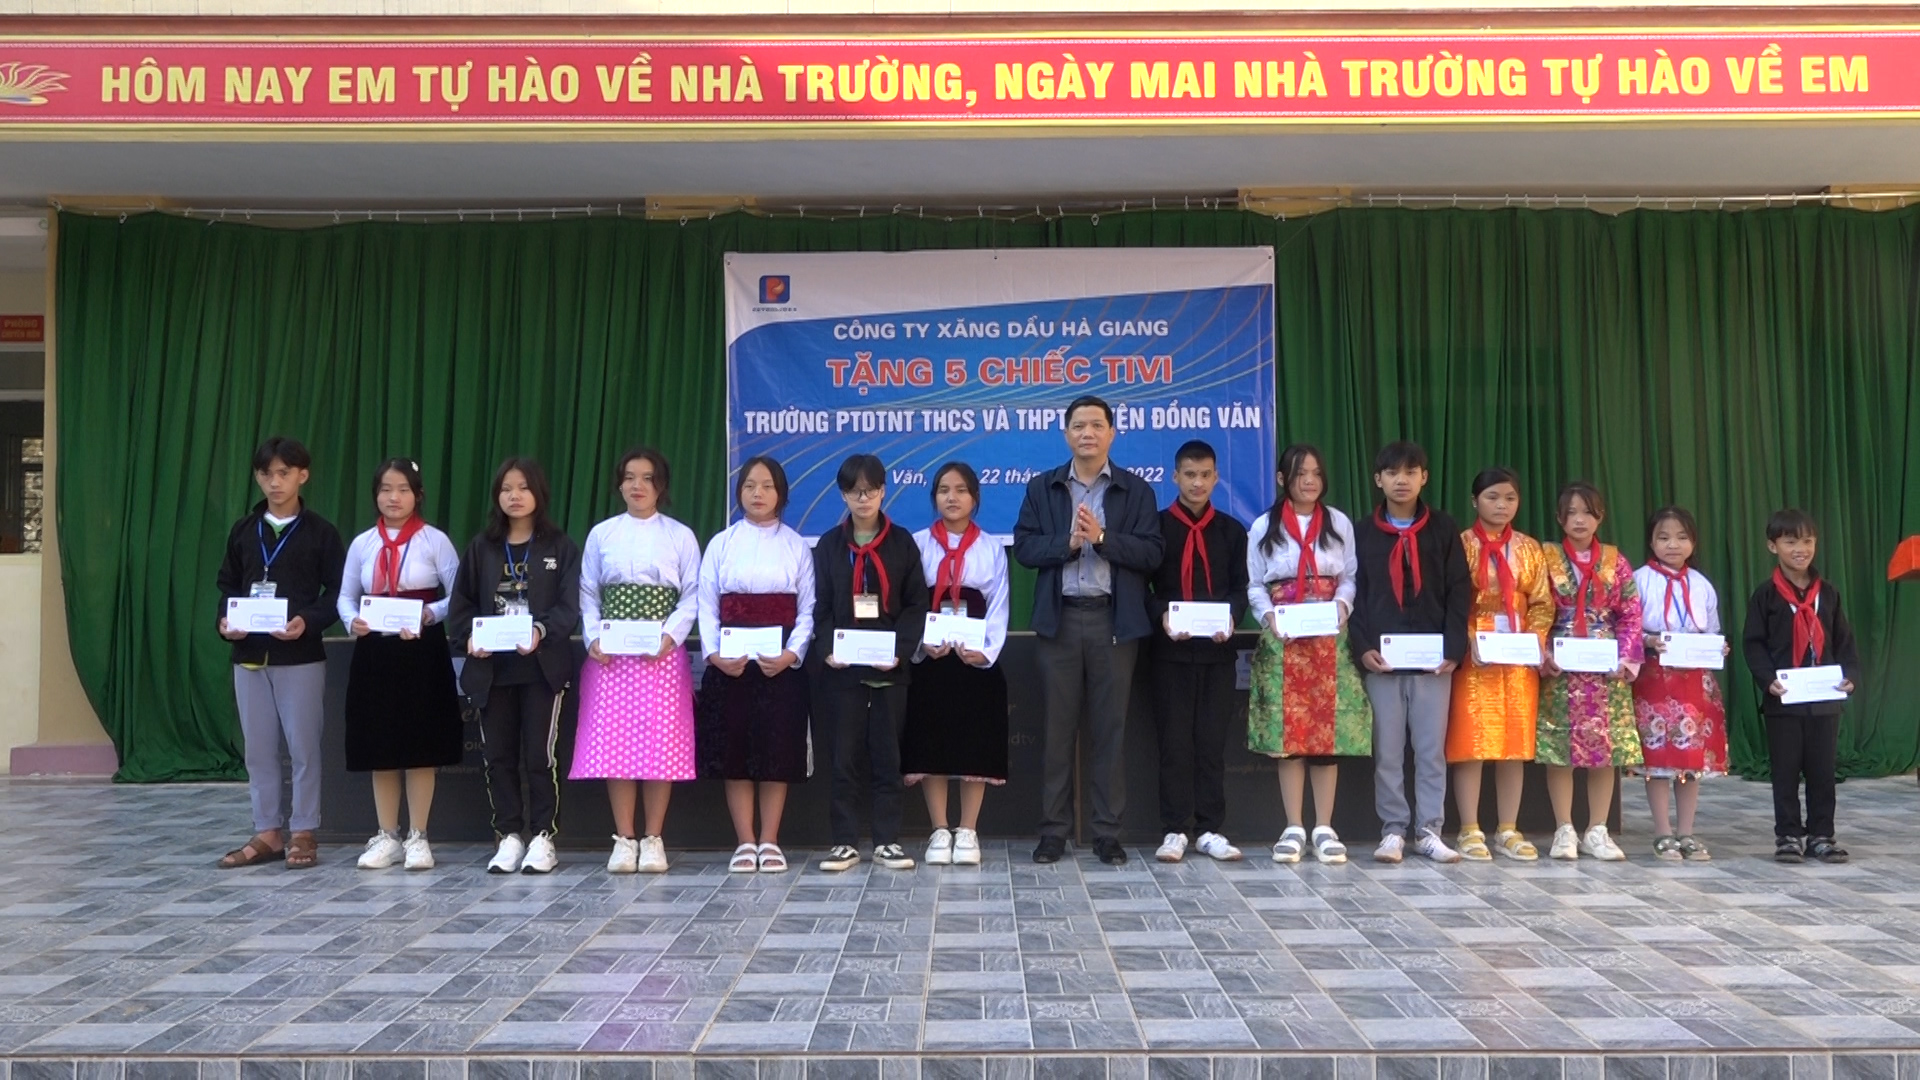 Công ty xăng dầu Hà Giang tặng quà cho Trường PTDTNT THCS&THPT huyện Đồng Văn